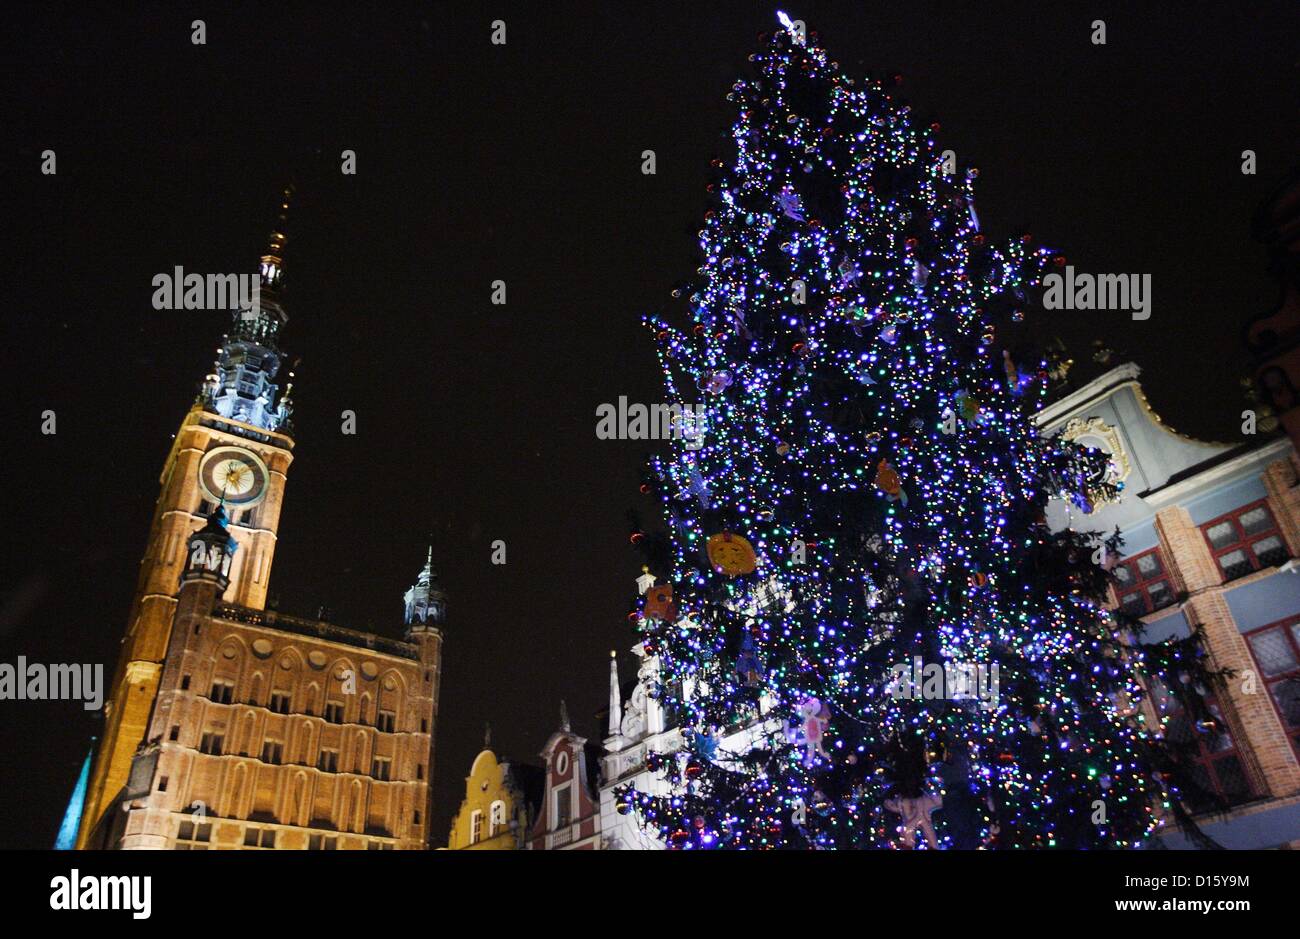 Gdansk, Polonia 8th, dicembre 2012 il più alto albero di Natale in Polonia  si erge a Danzica Centro citta'. Albero di natale è di oltre 28 metri di  altezza e dispone di